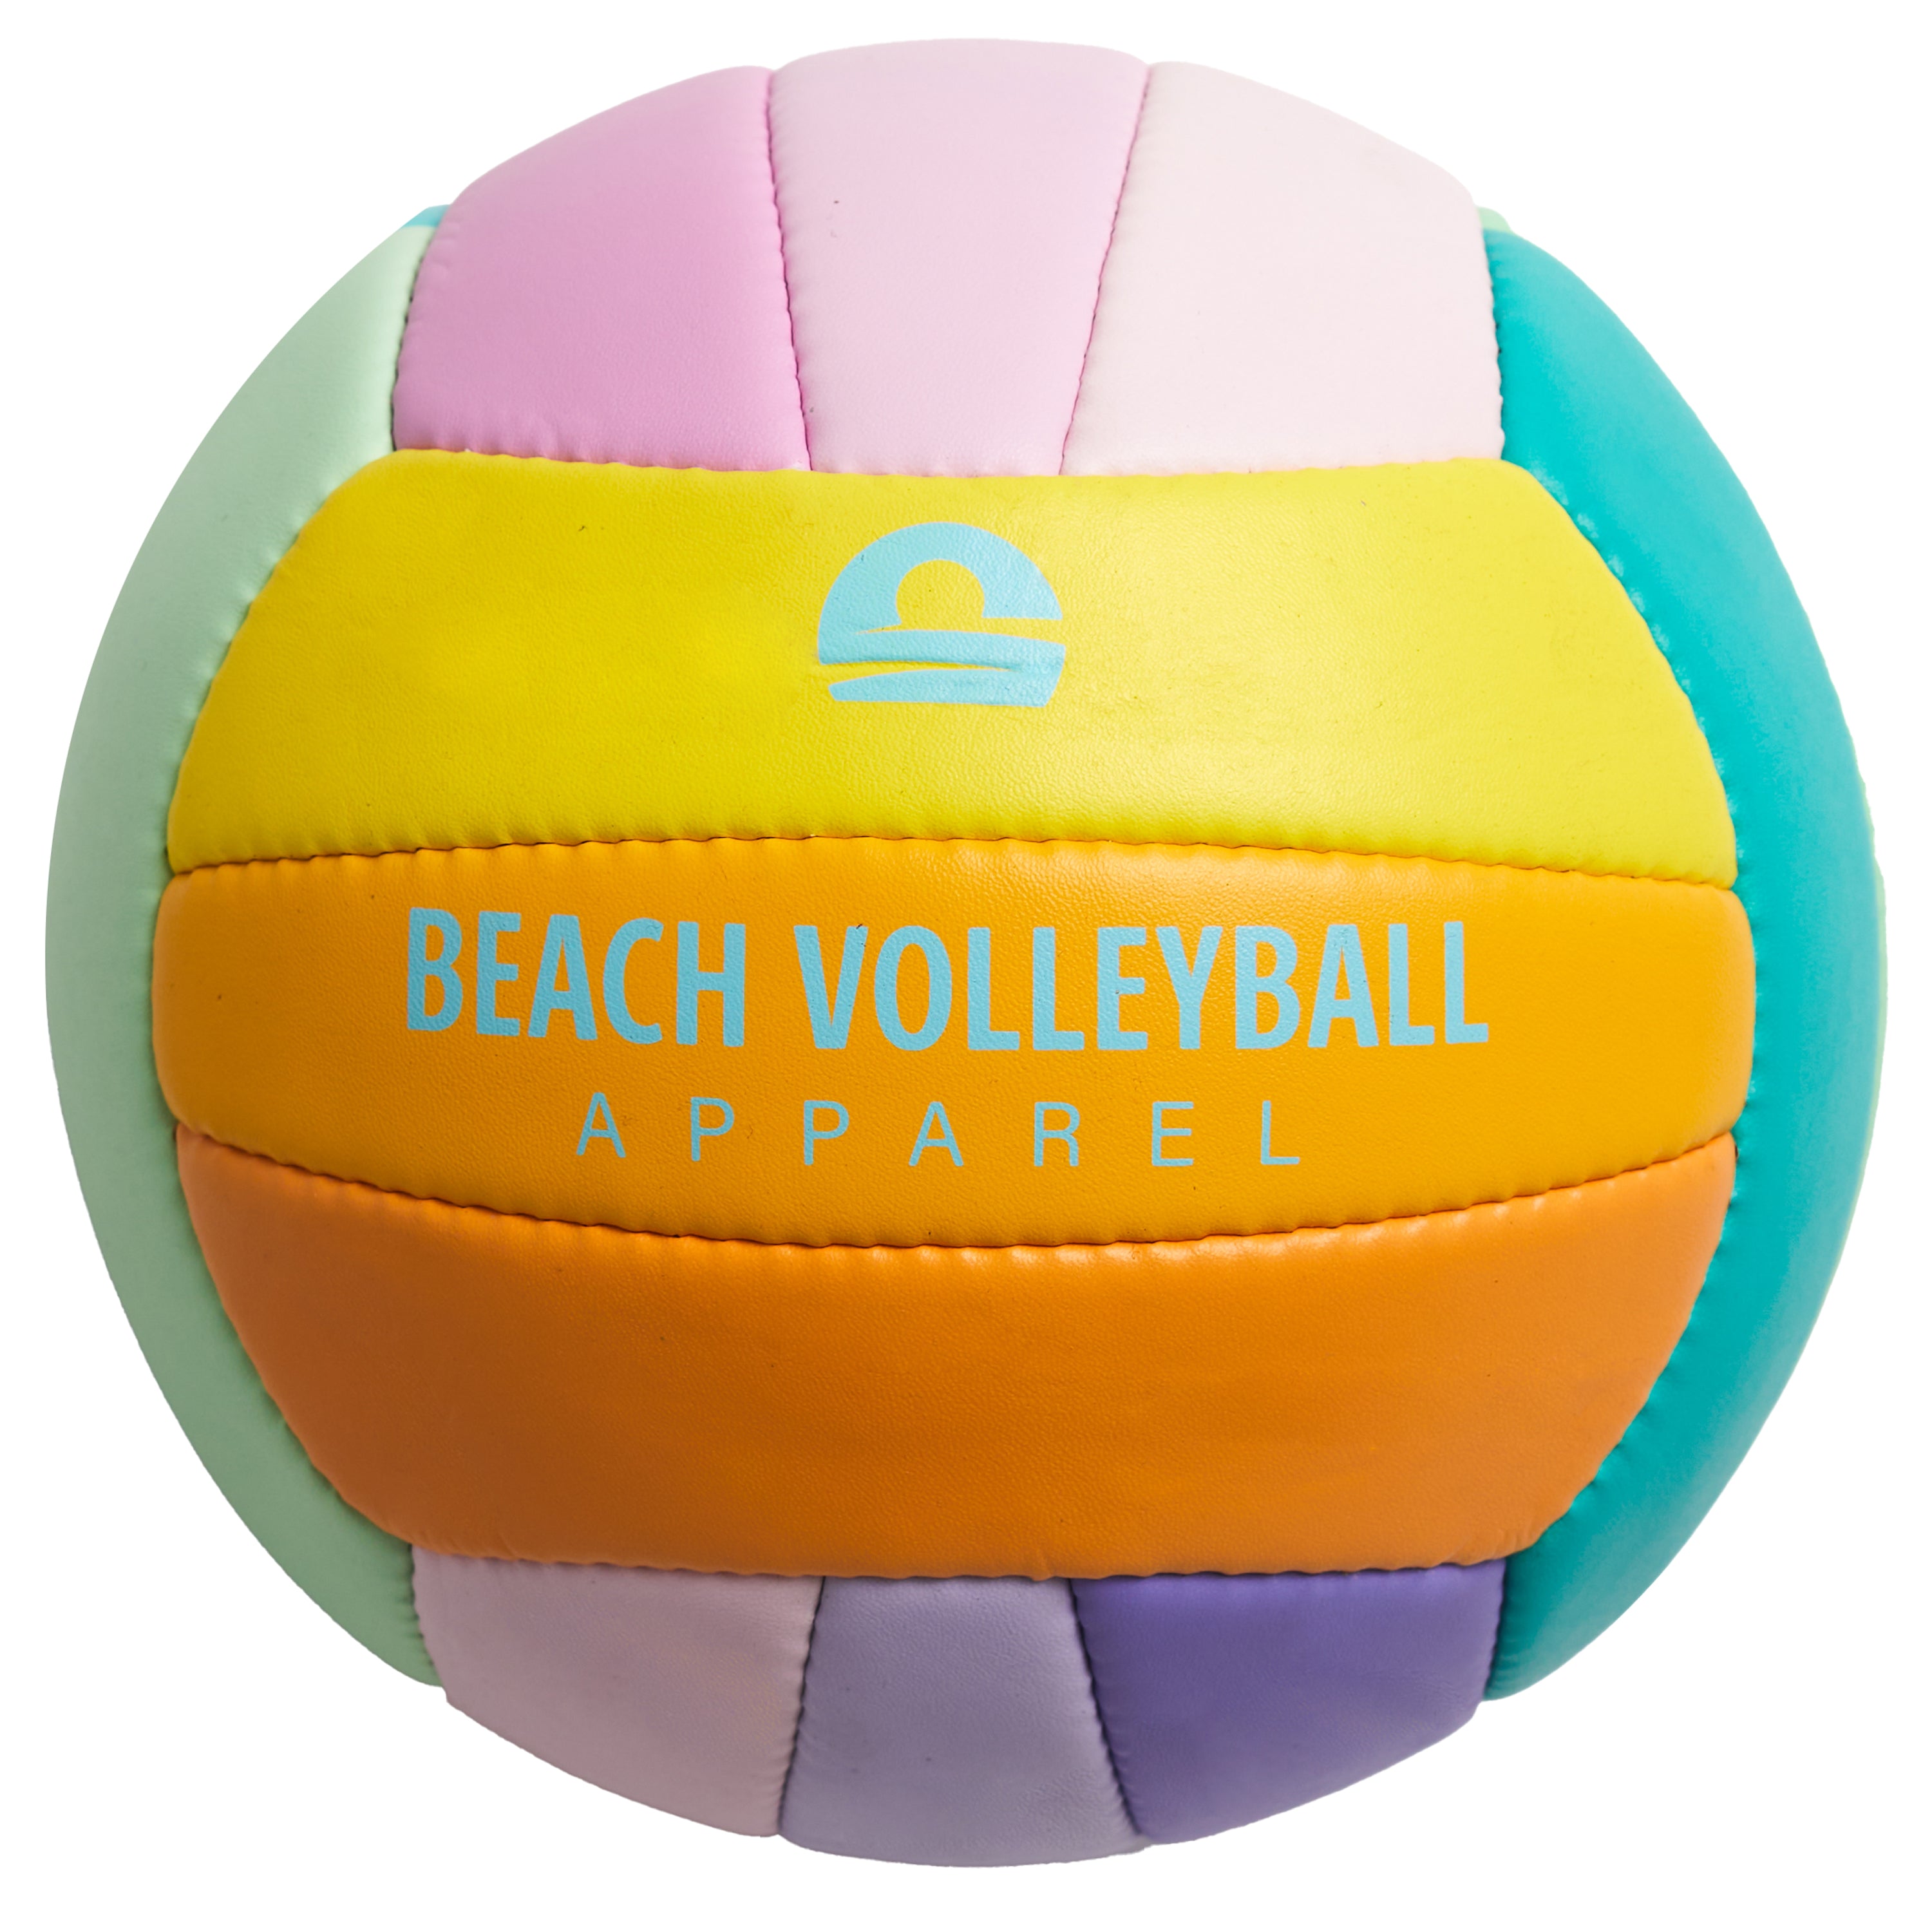 Beachvolleyball SunSetter, offizielle Größe, handgenäht, robust, wasserdicht